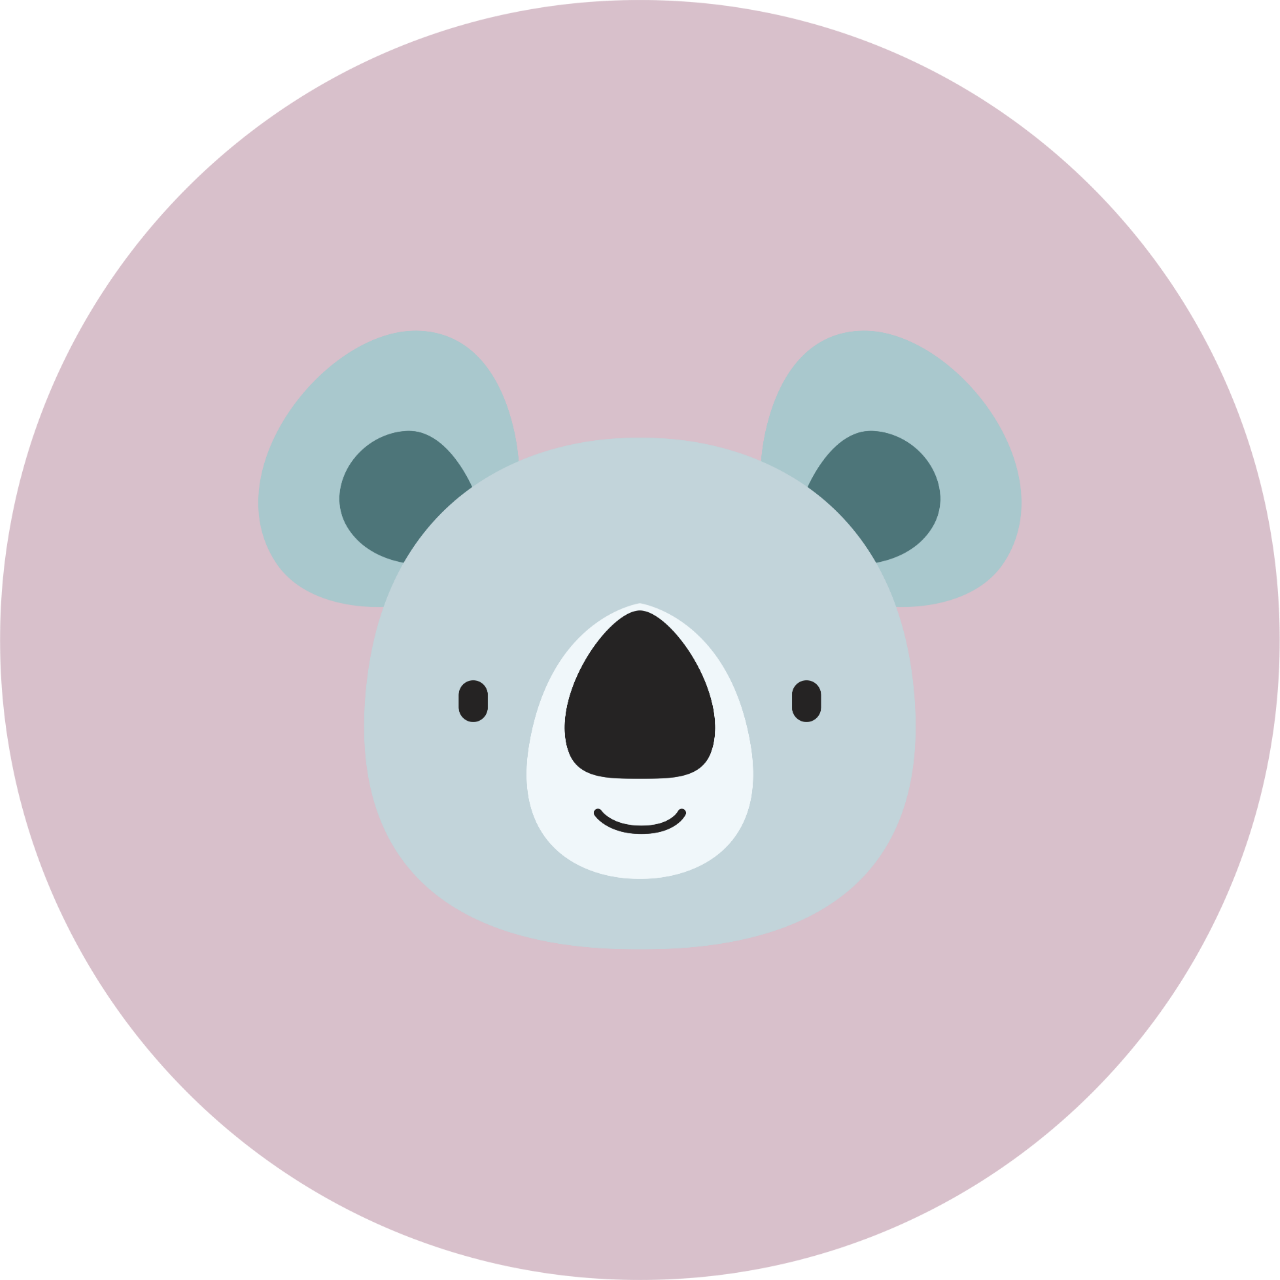 Açık pembe bir daire içinde siyah bir burnu olan gri beyaz renkli bir koala başı